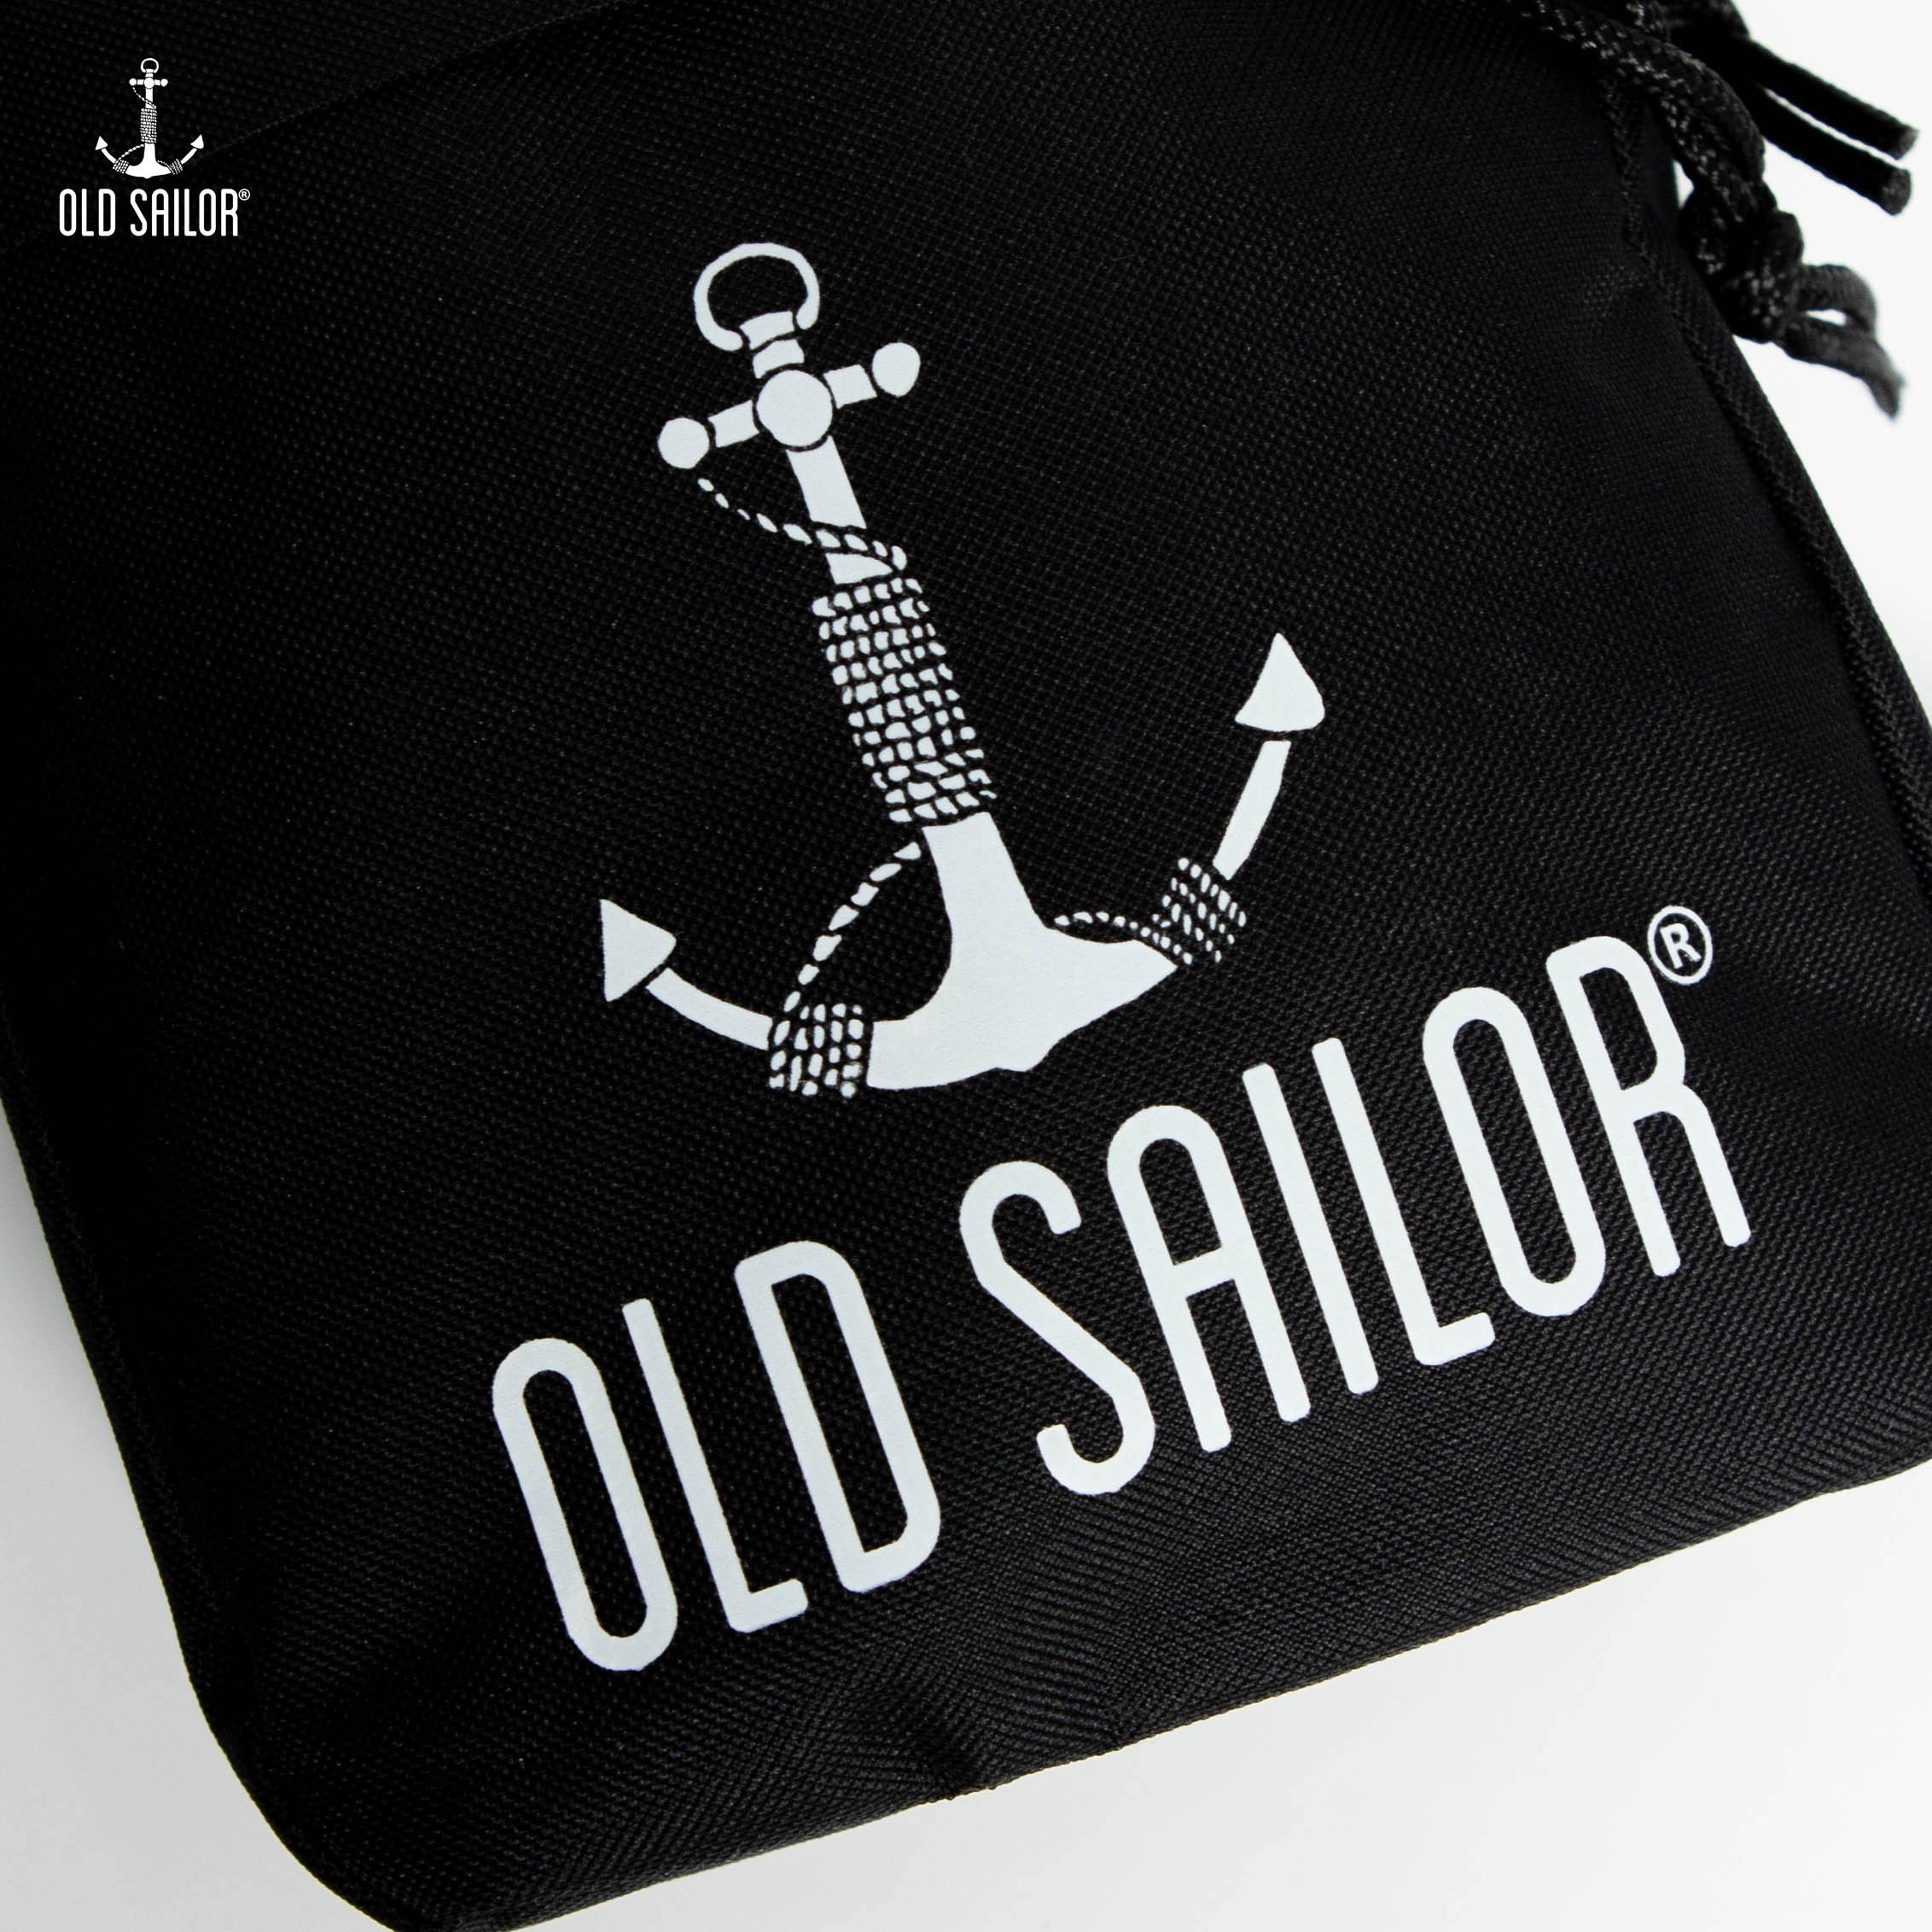 Túi đeo chéo Old Sailor - O.S.L MINI BAG - BLACK - MBDE21028